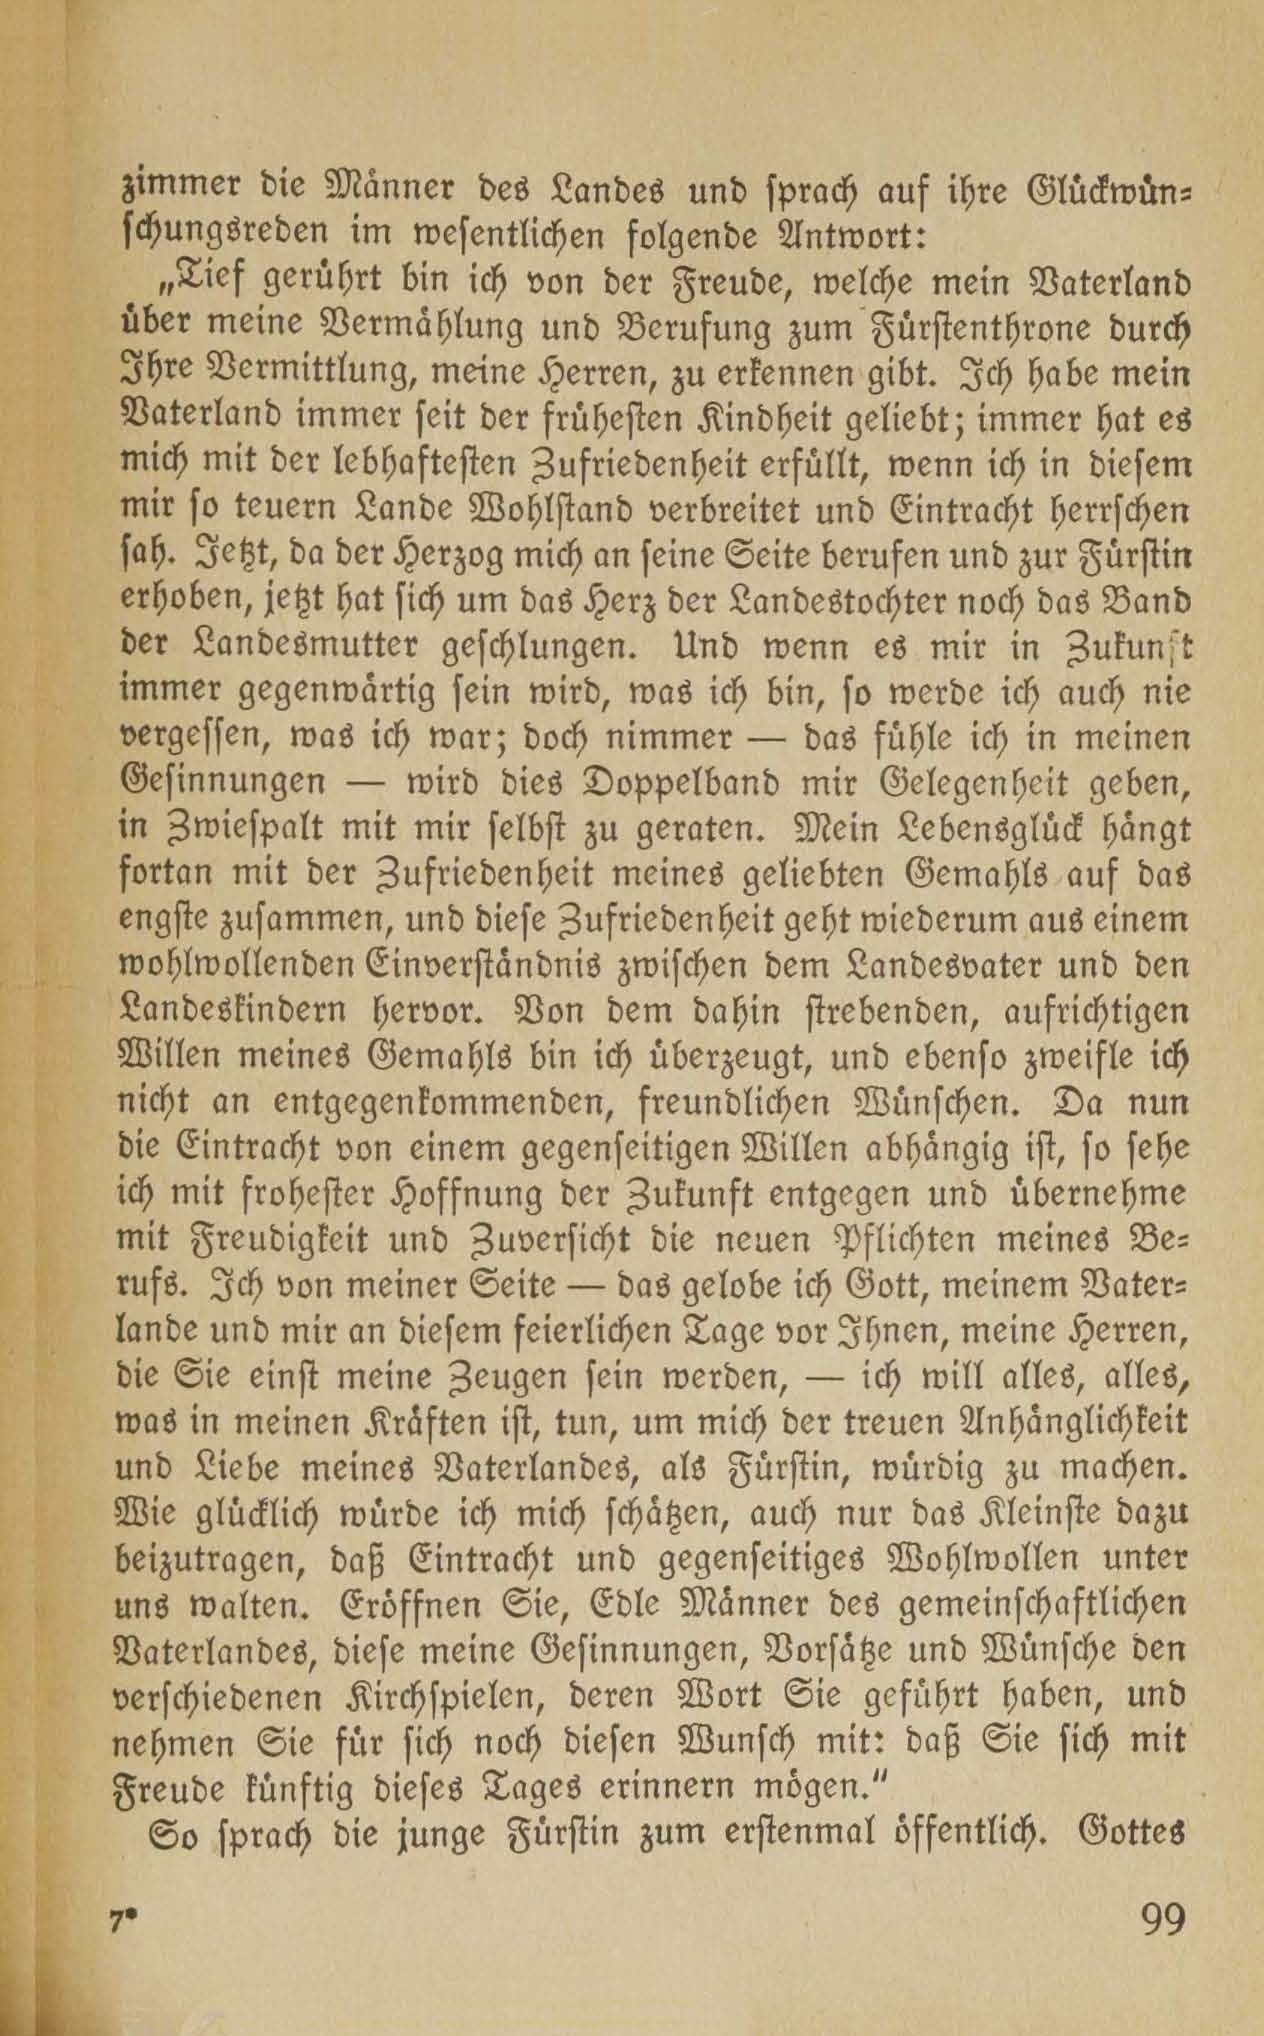 Baltische Briefe aus zwei Jahrhunderten (1917 ?) | 94. (99) Main body of text